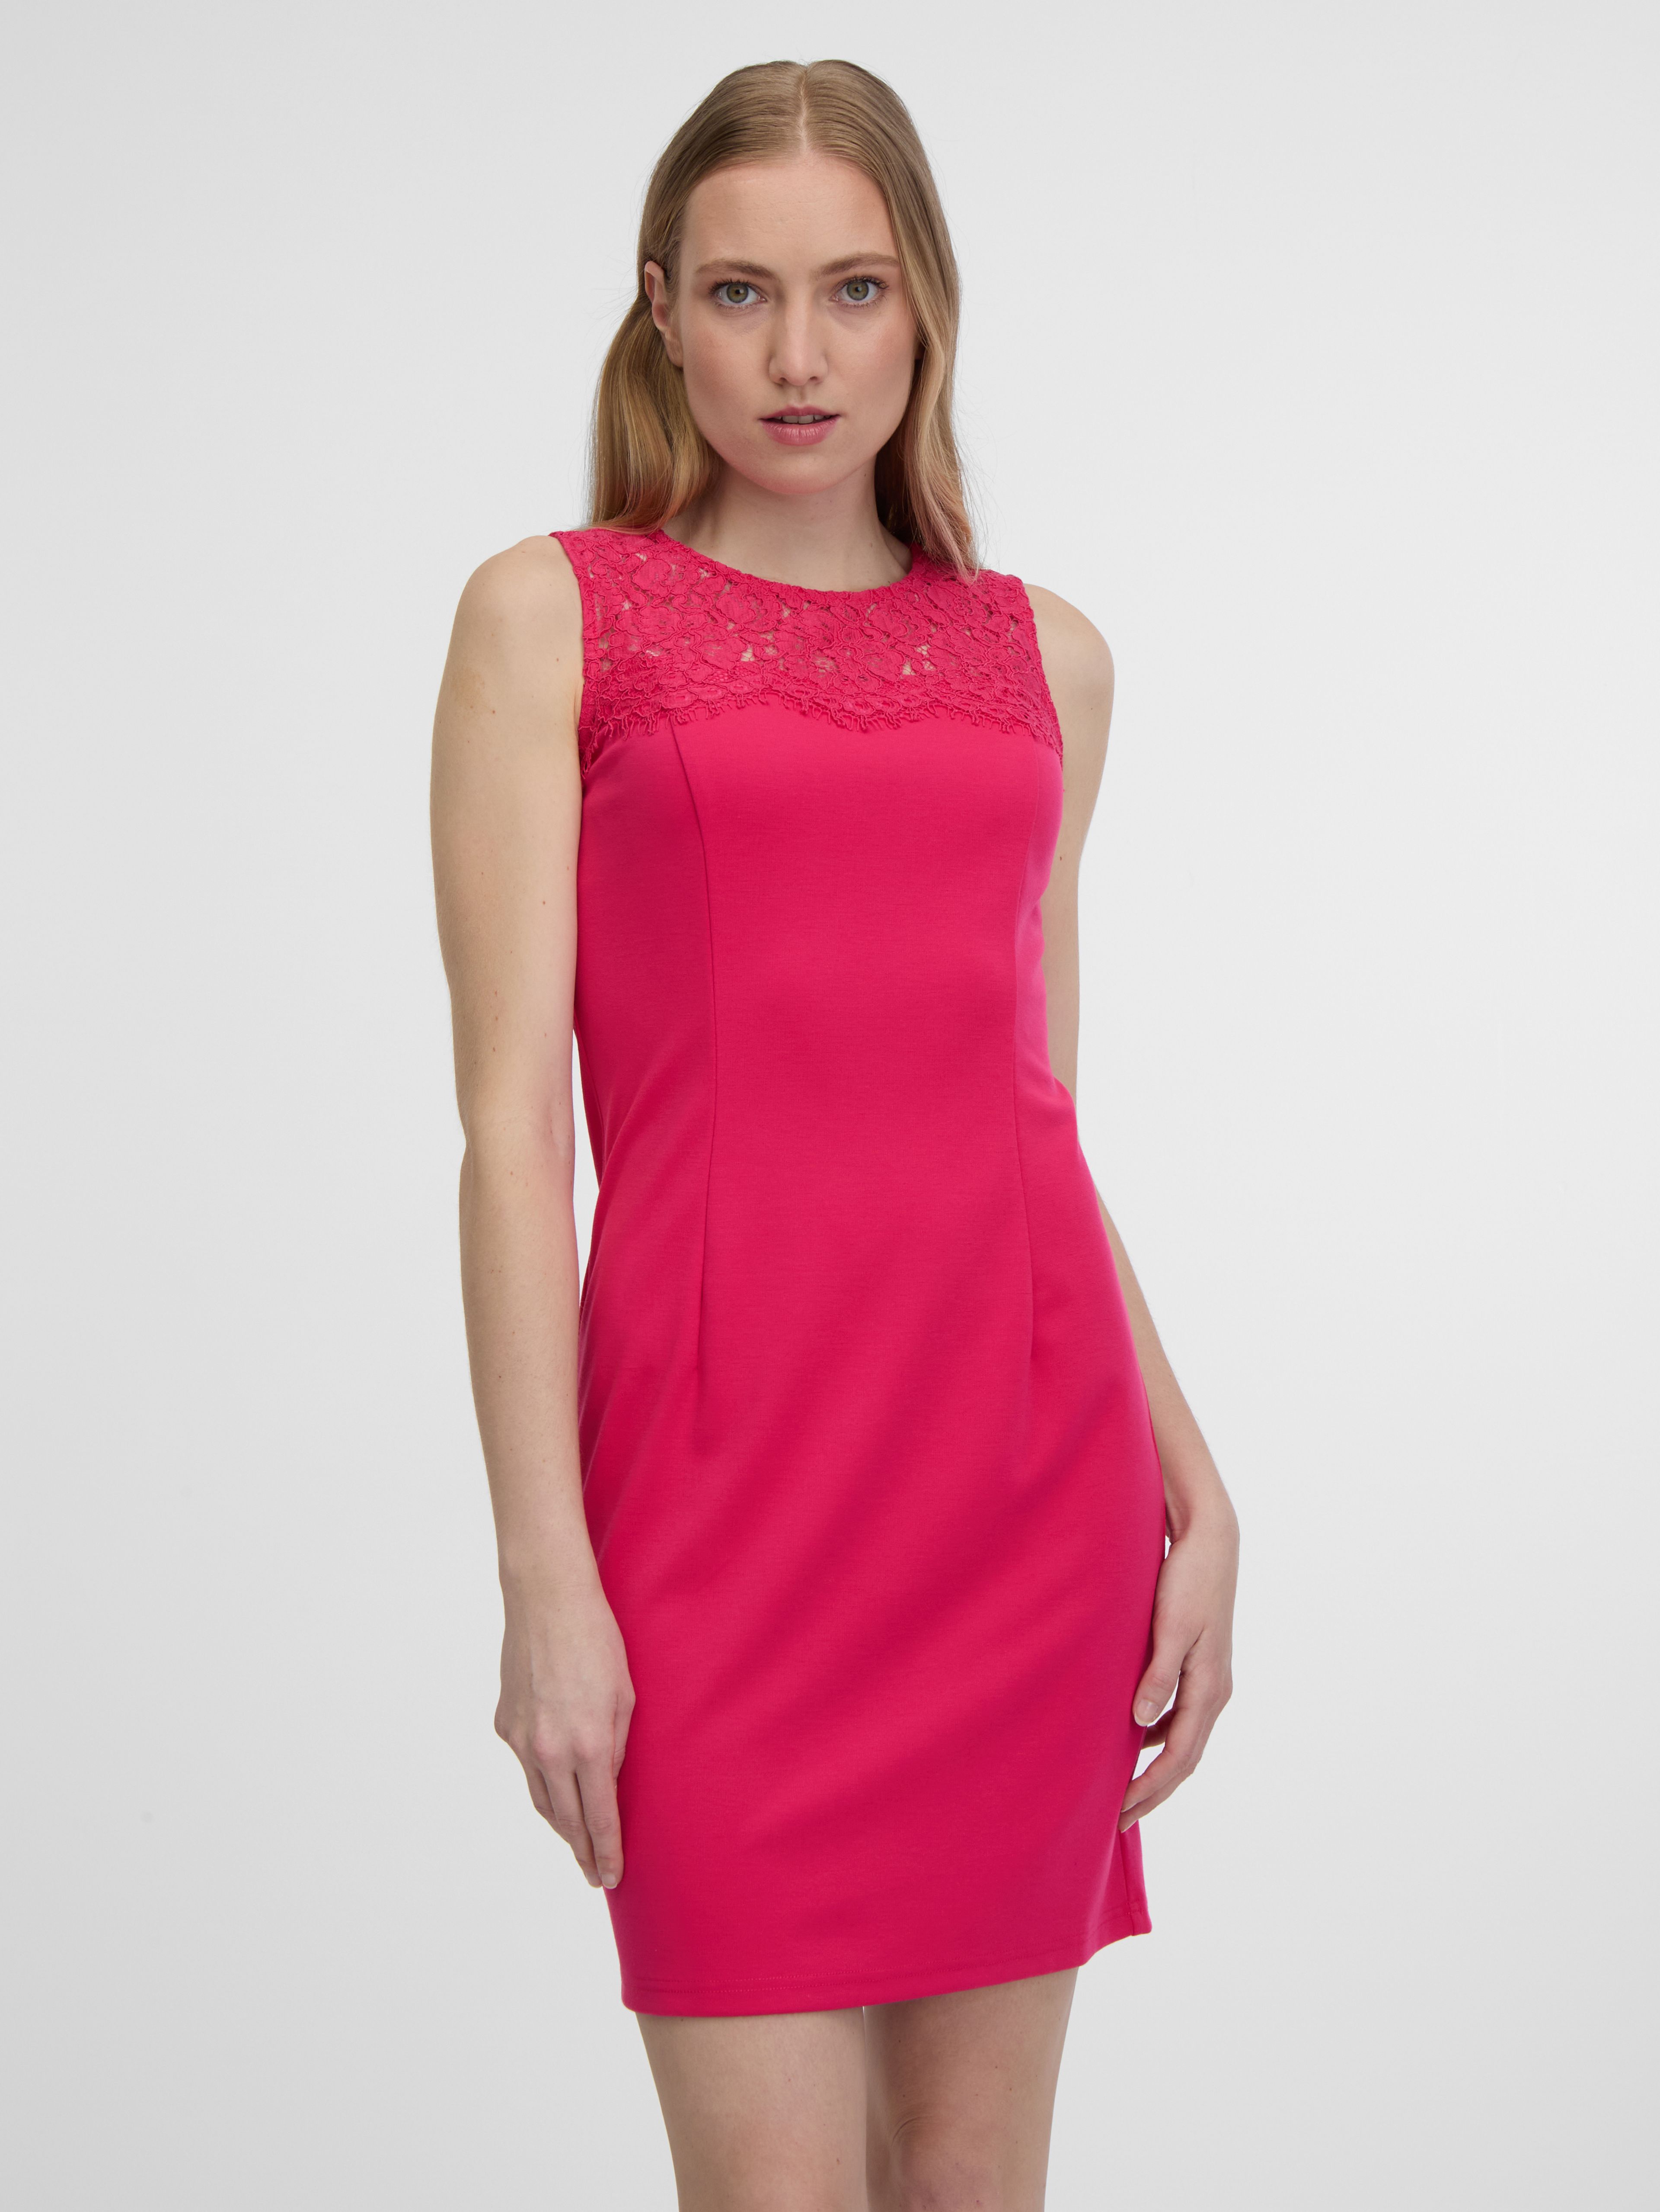 Tmavě růžové dámské pouzdrové šaty s krajkou ORSAY